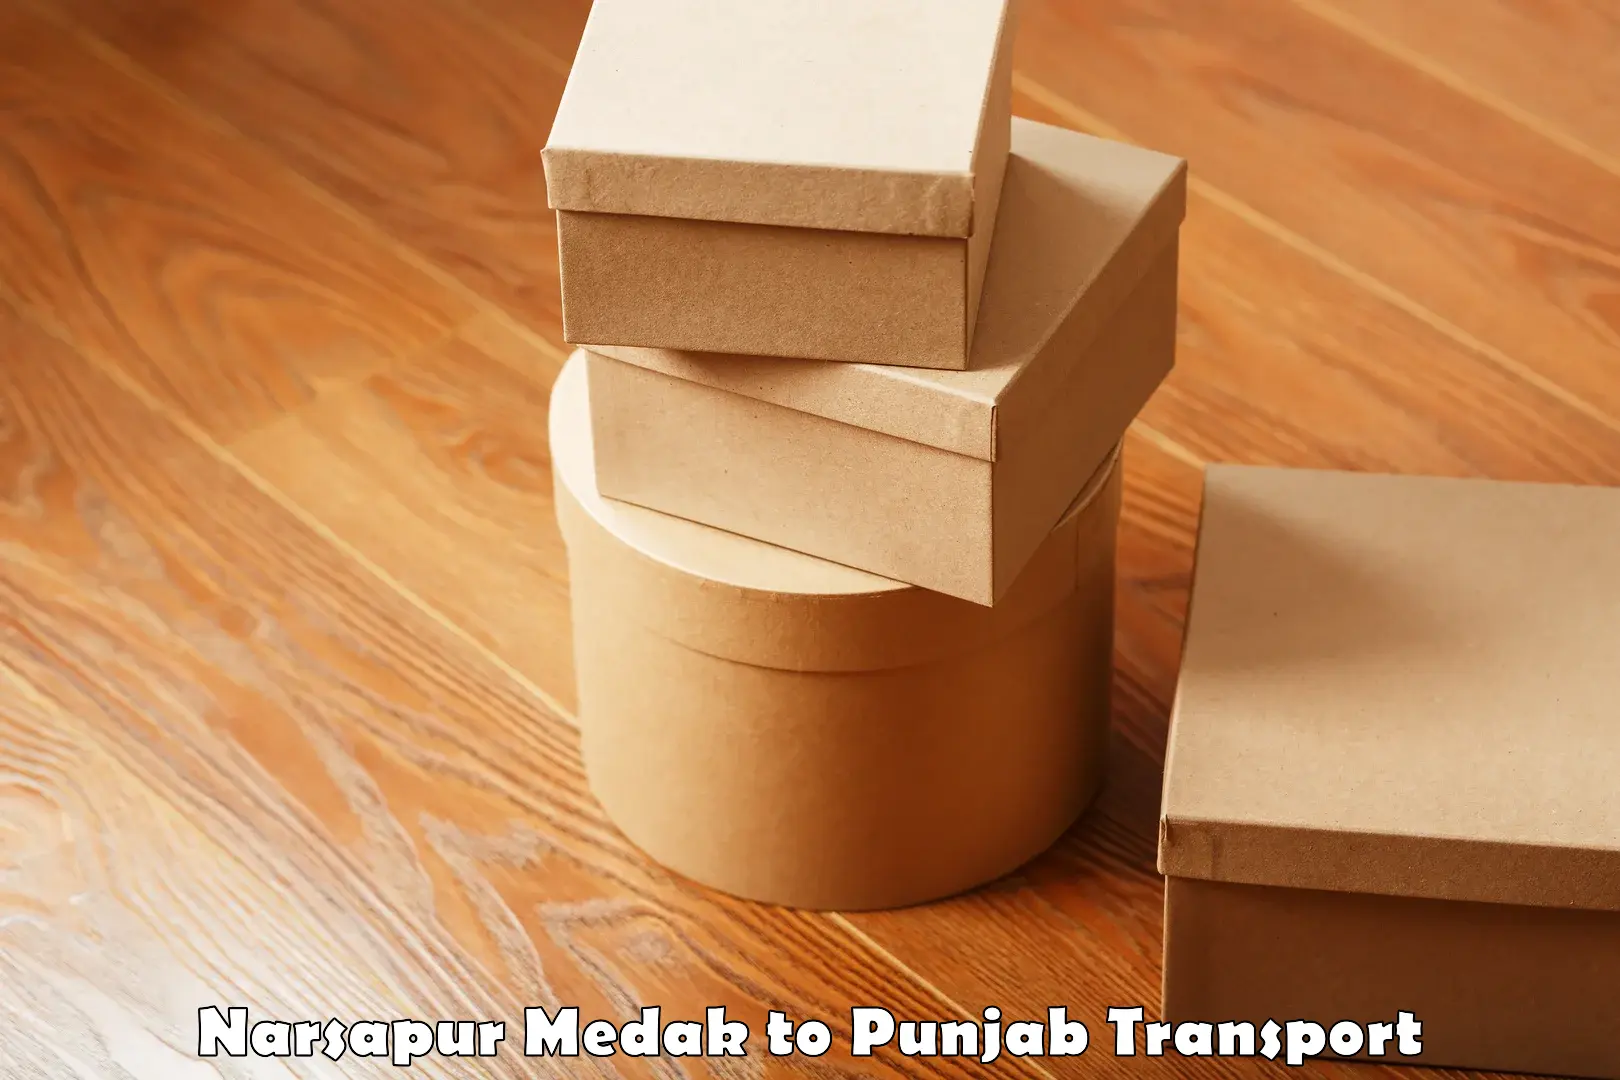 Two wheeler parcel service Narsapur Medak to Punjab